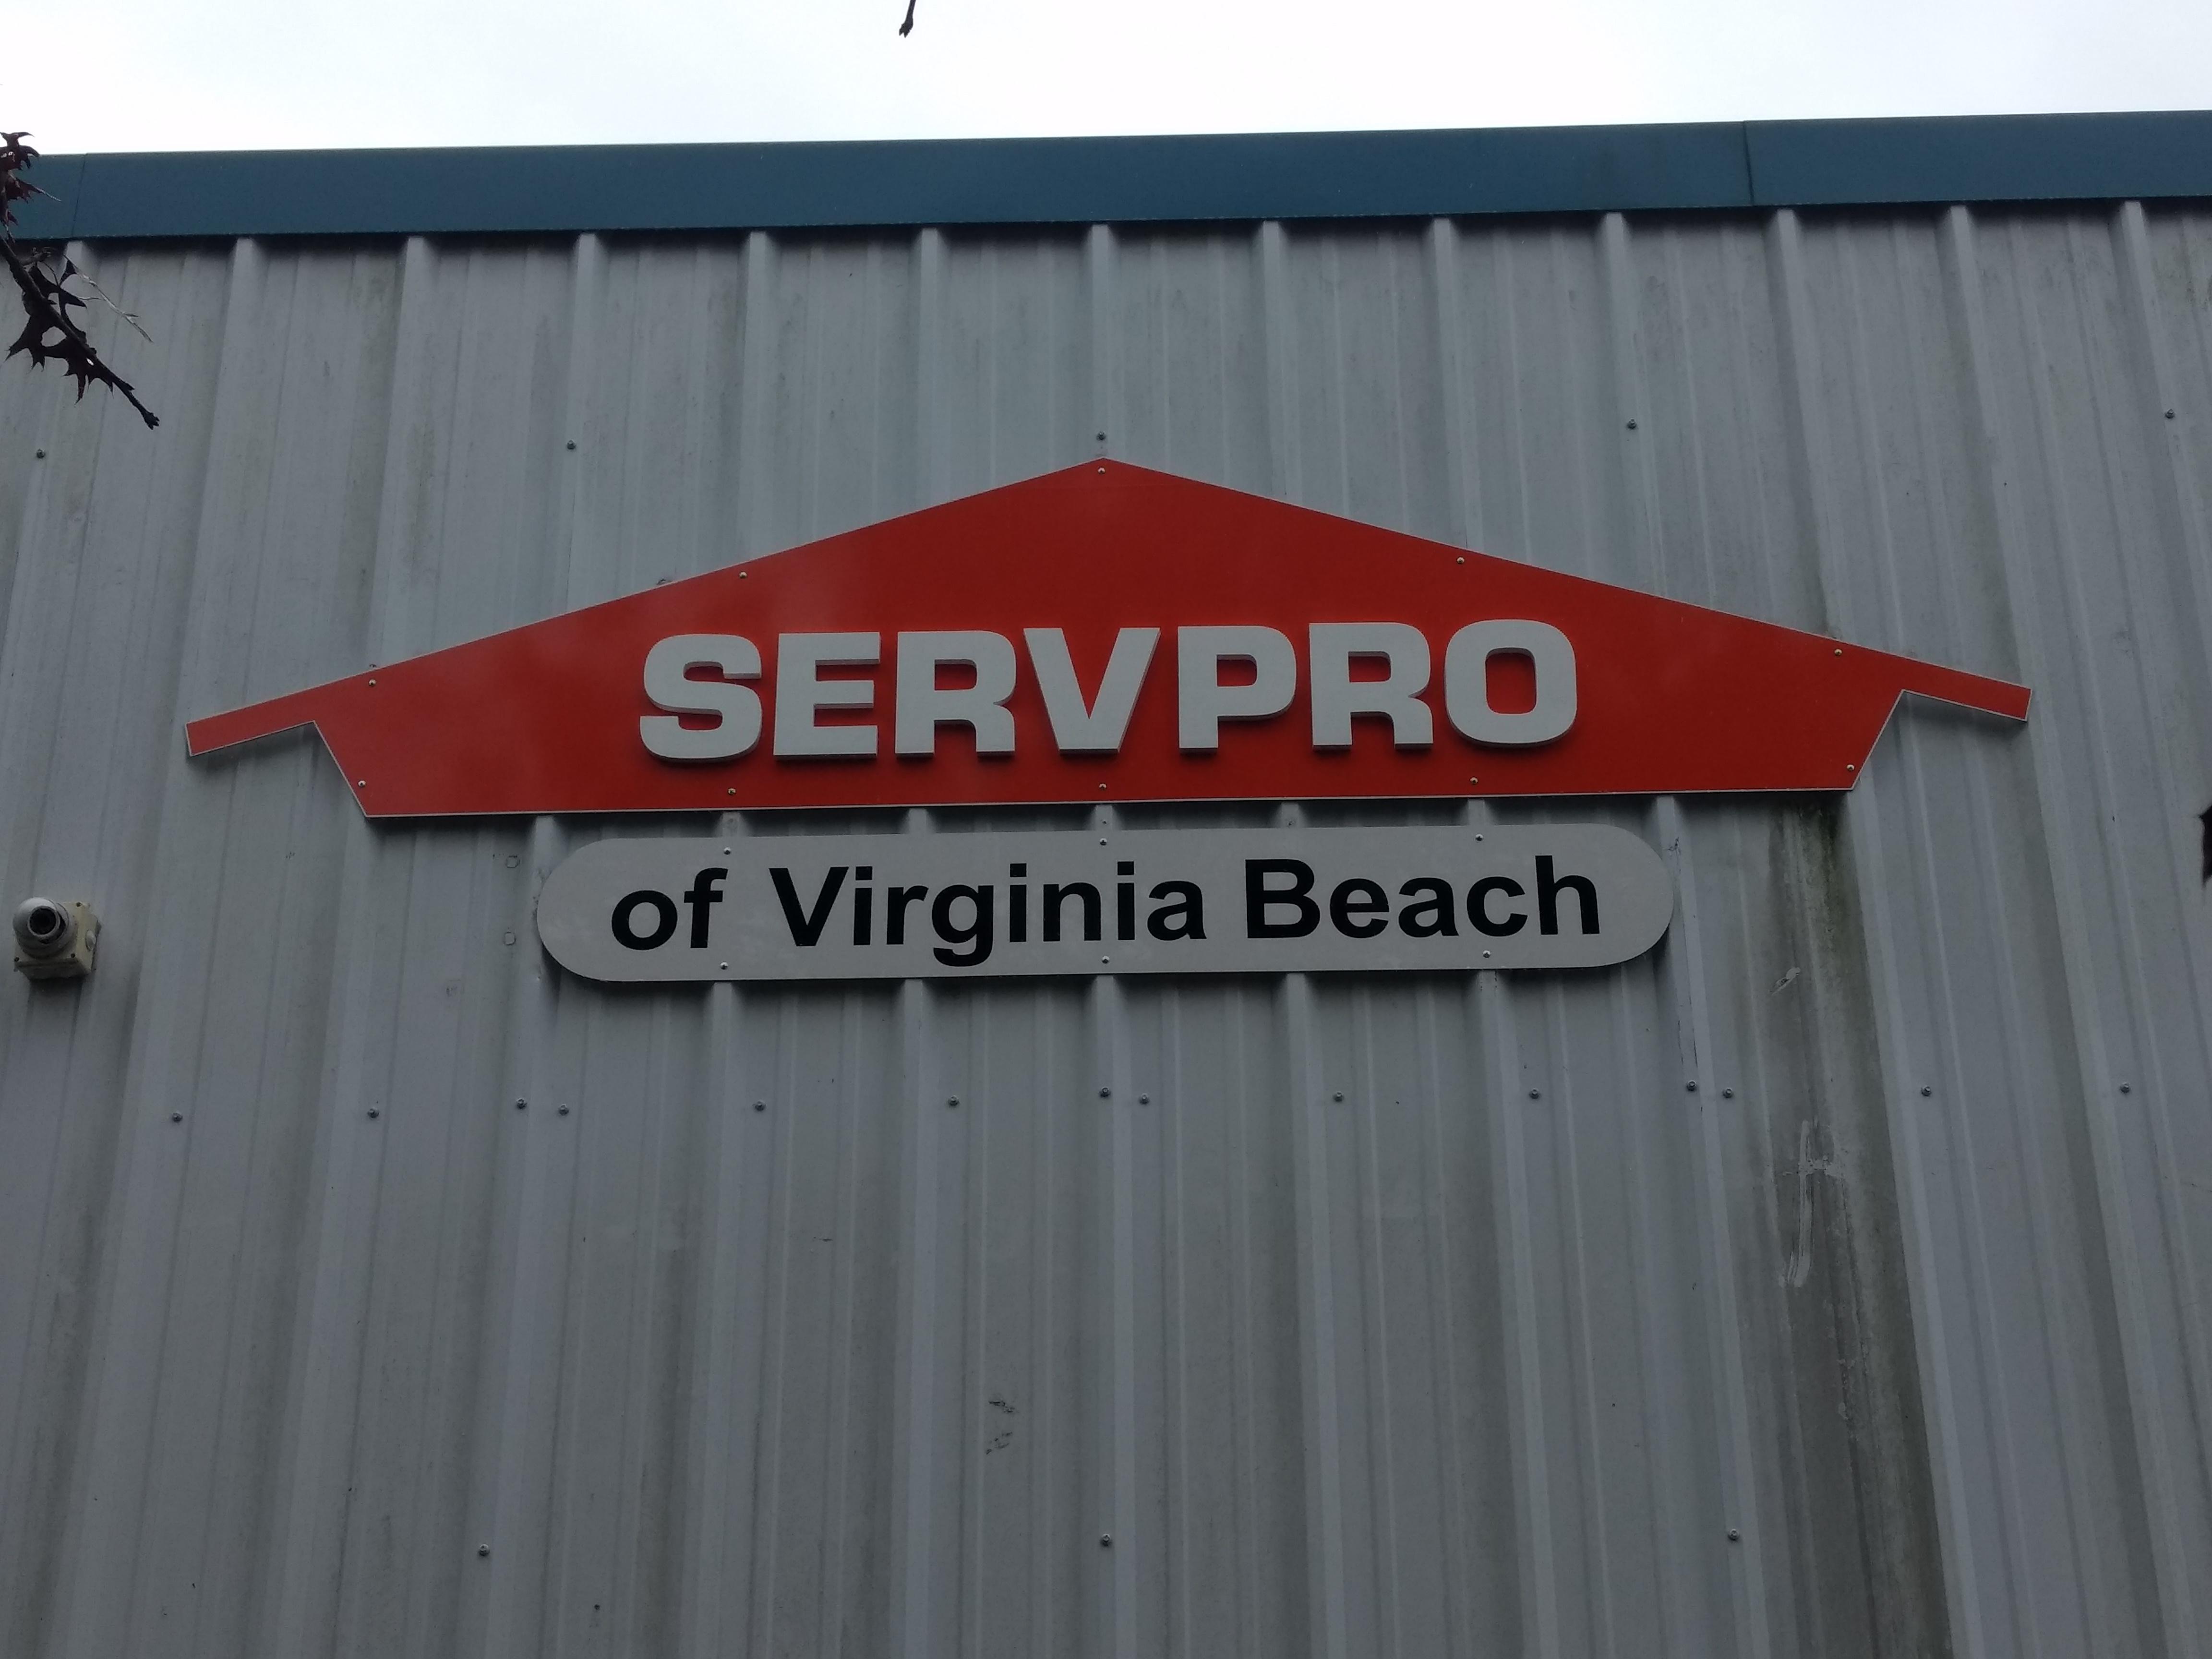 SERVPRO building sign